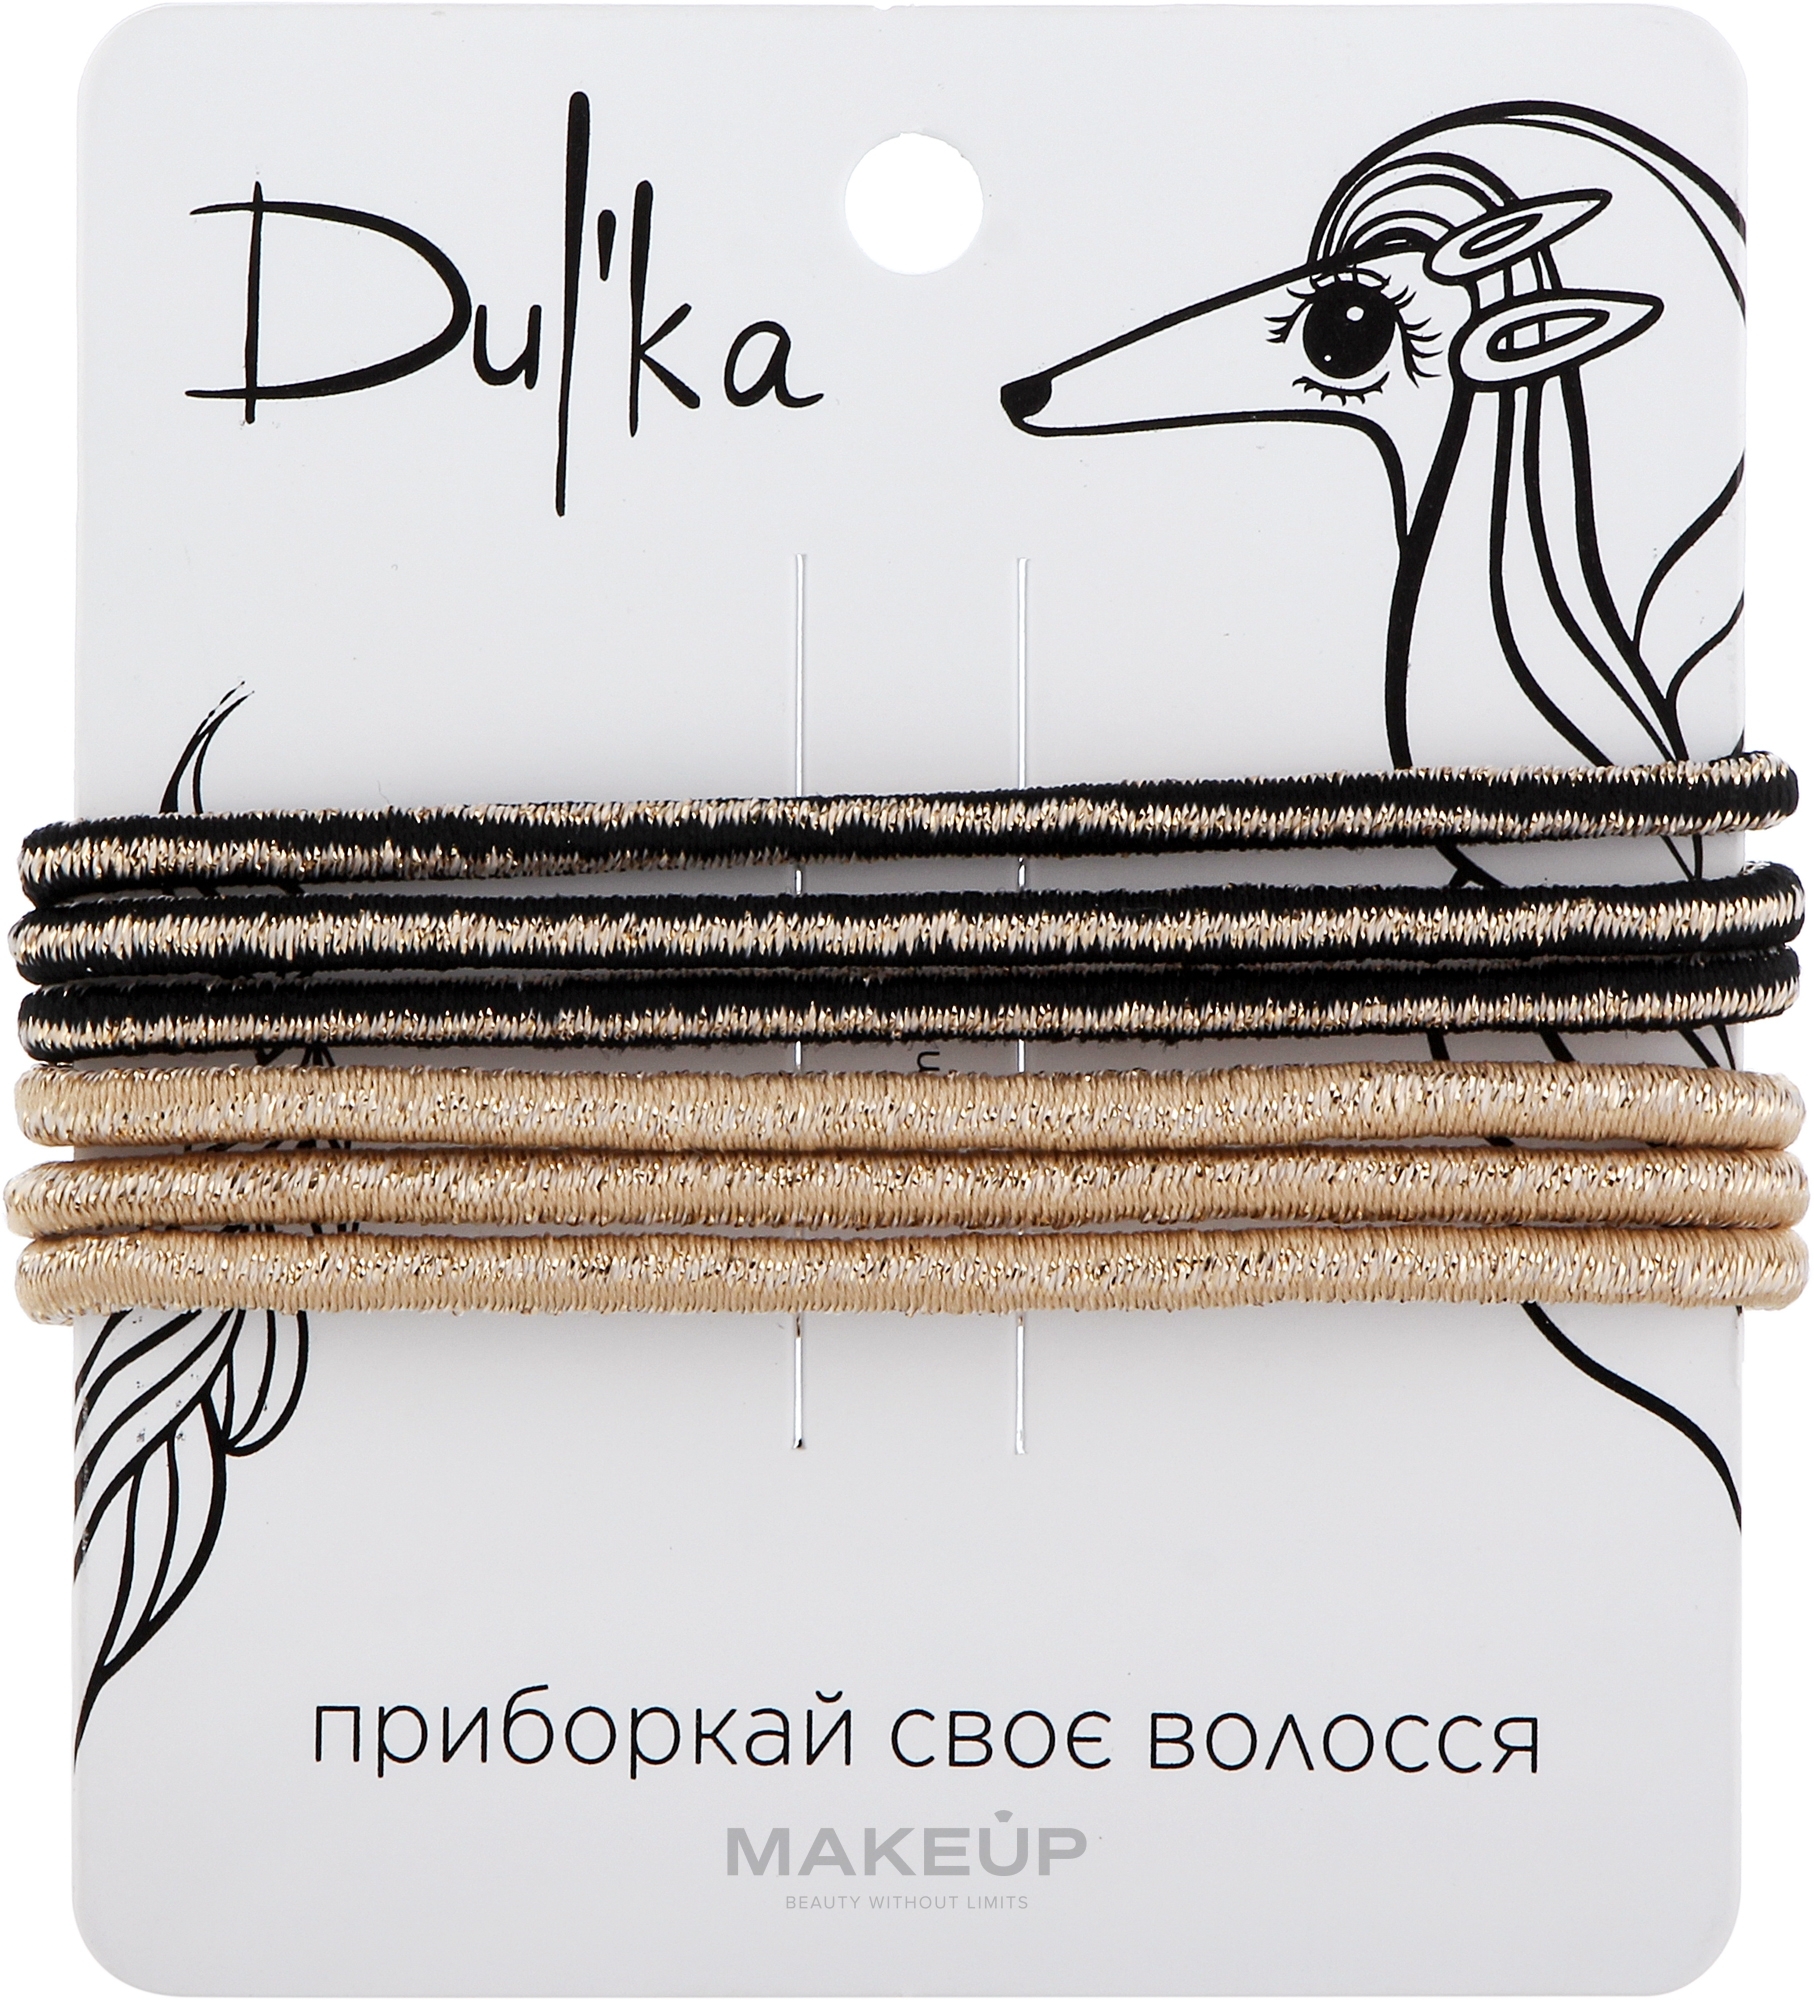 Набор разноцветных резинок для волос UH717747, 6 шт - Dulka  — фото 6шт